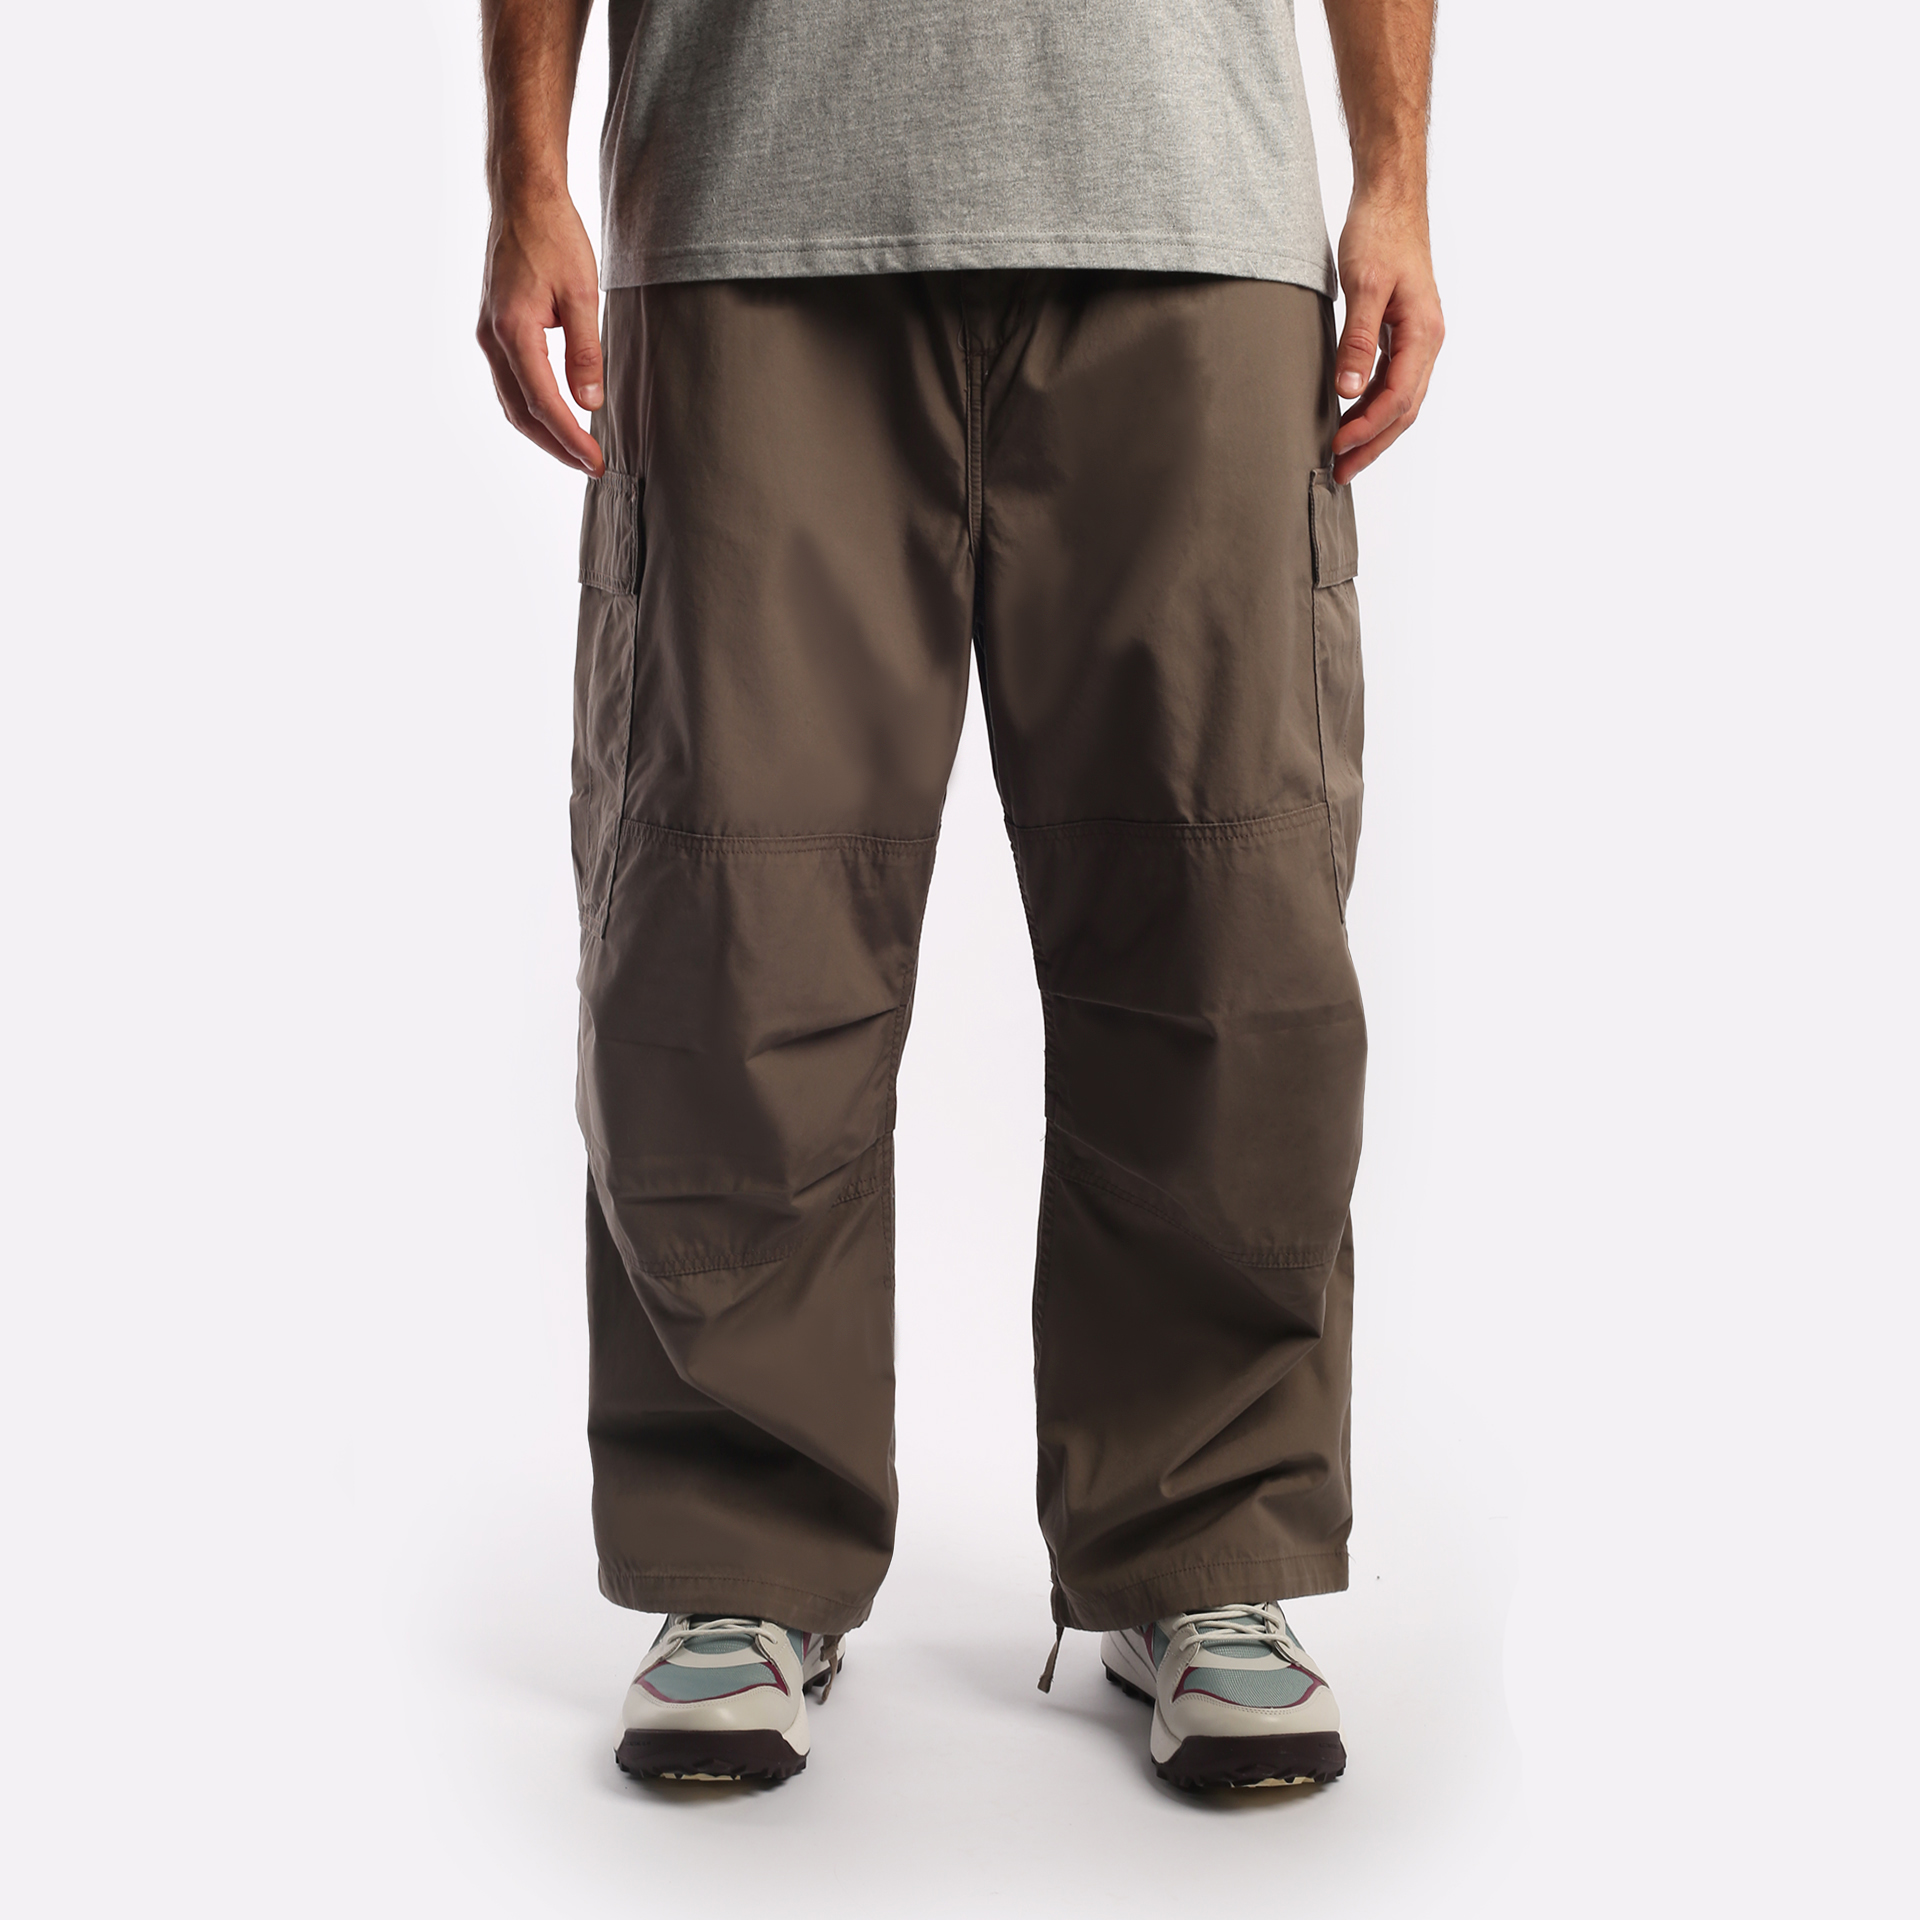 мужские брюки Carhartt WIP Jet  (I031520-barista)  - цена, описание, фото 1